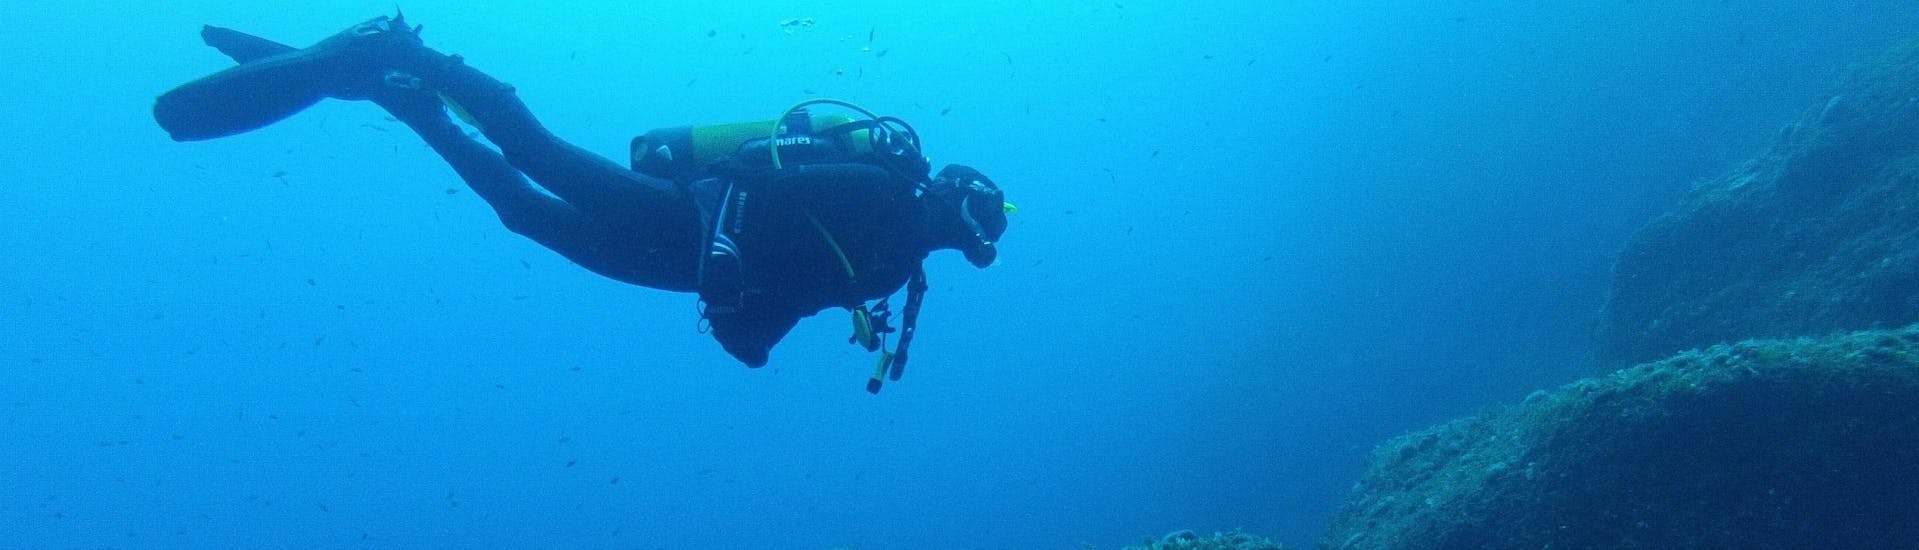 Formation plongée PADI Open Water Diver pour Débutants.